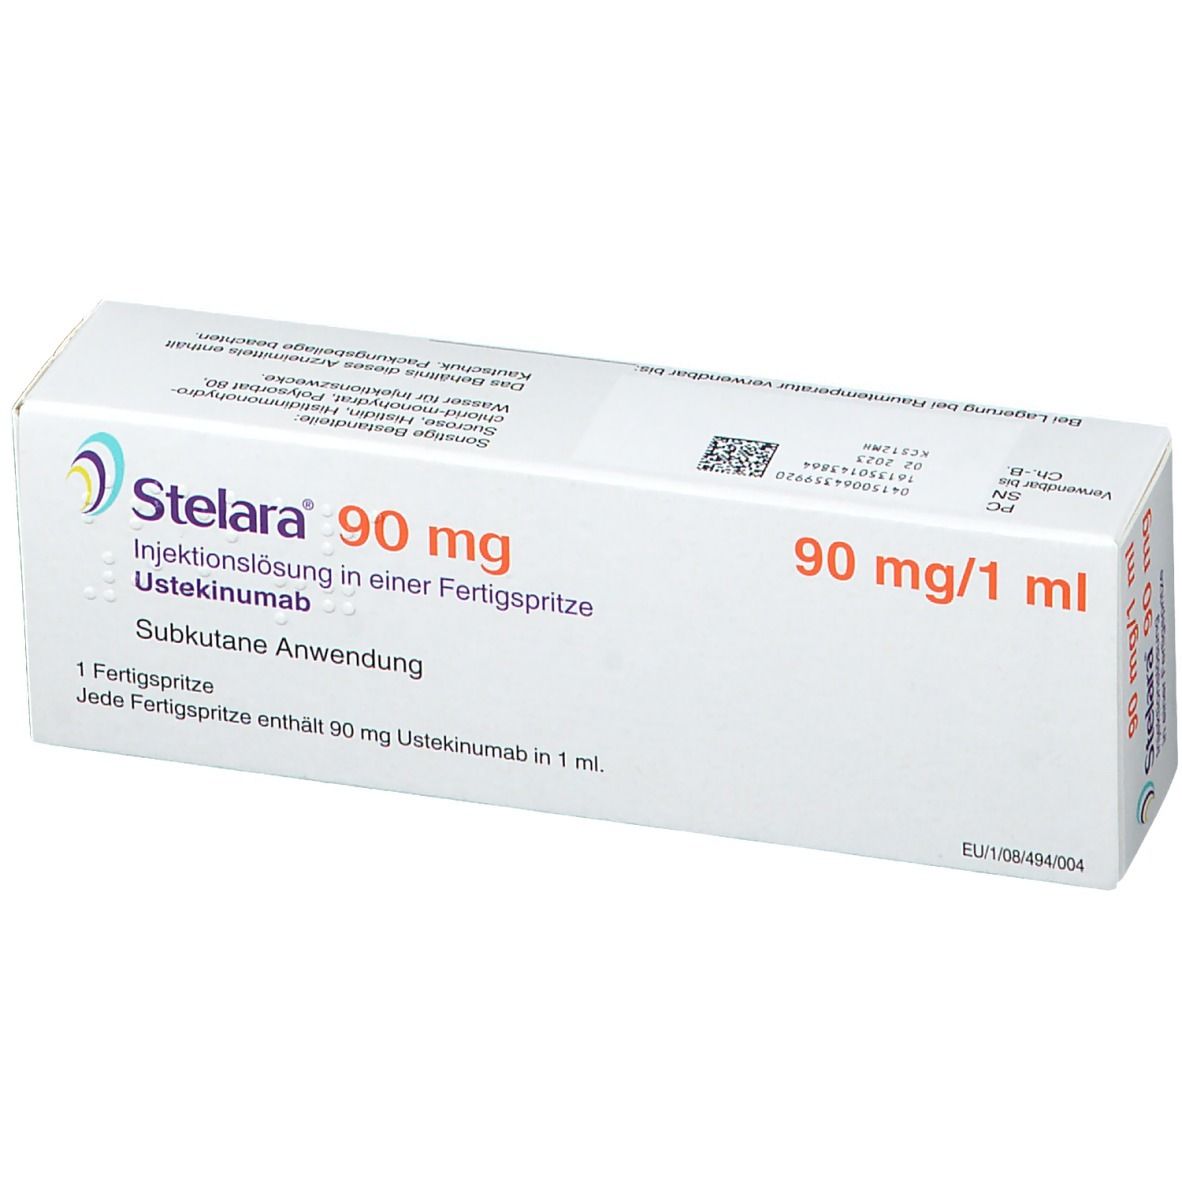 Stelara® 90 mg